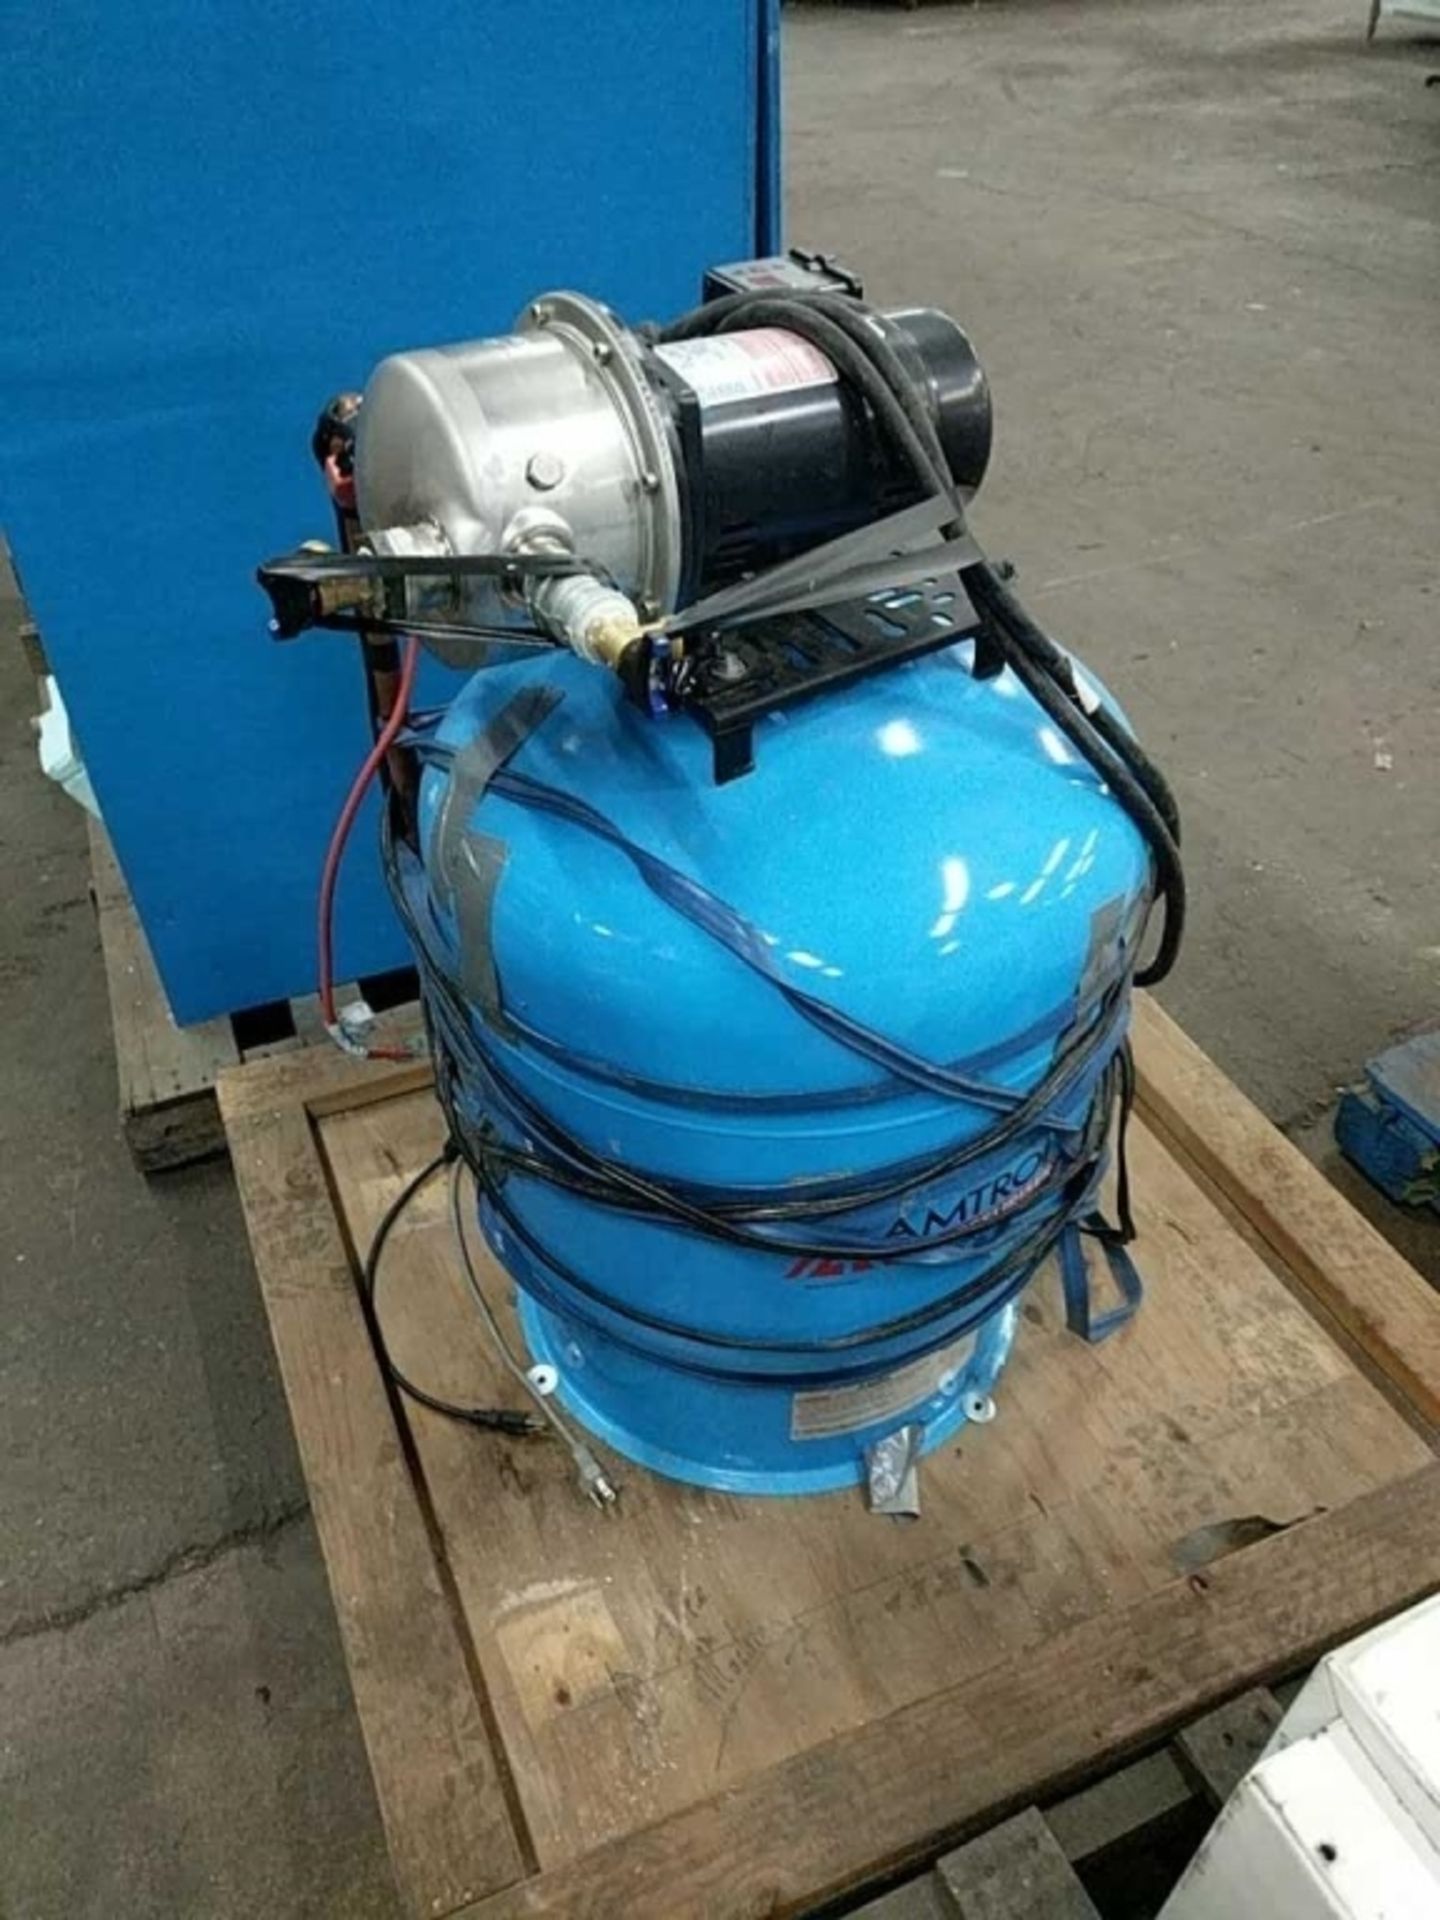 Amtrol RP-25 Water Pressure Pump